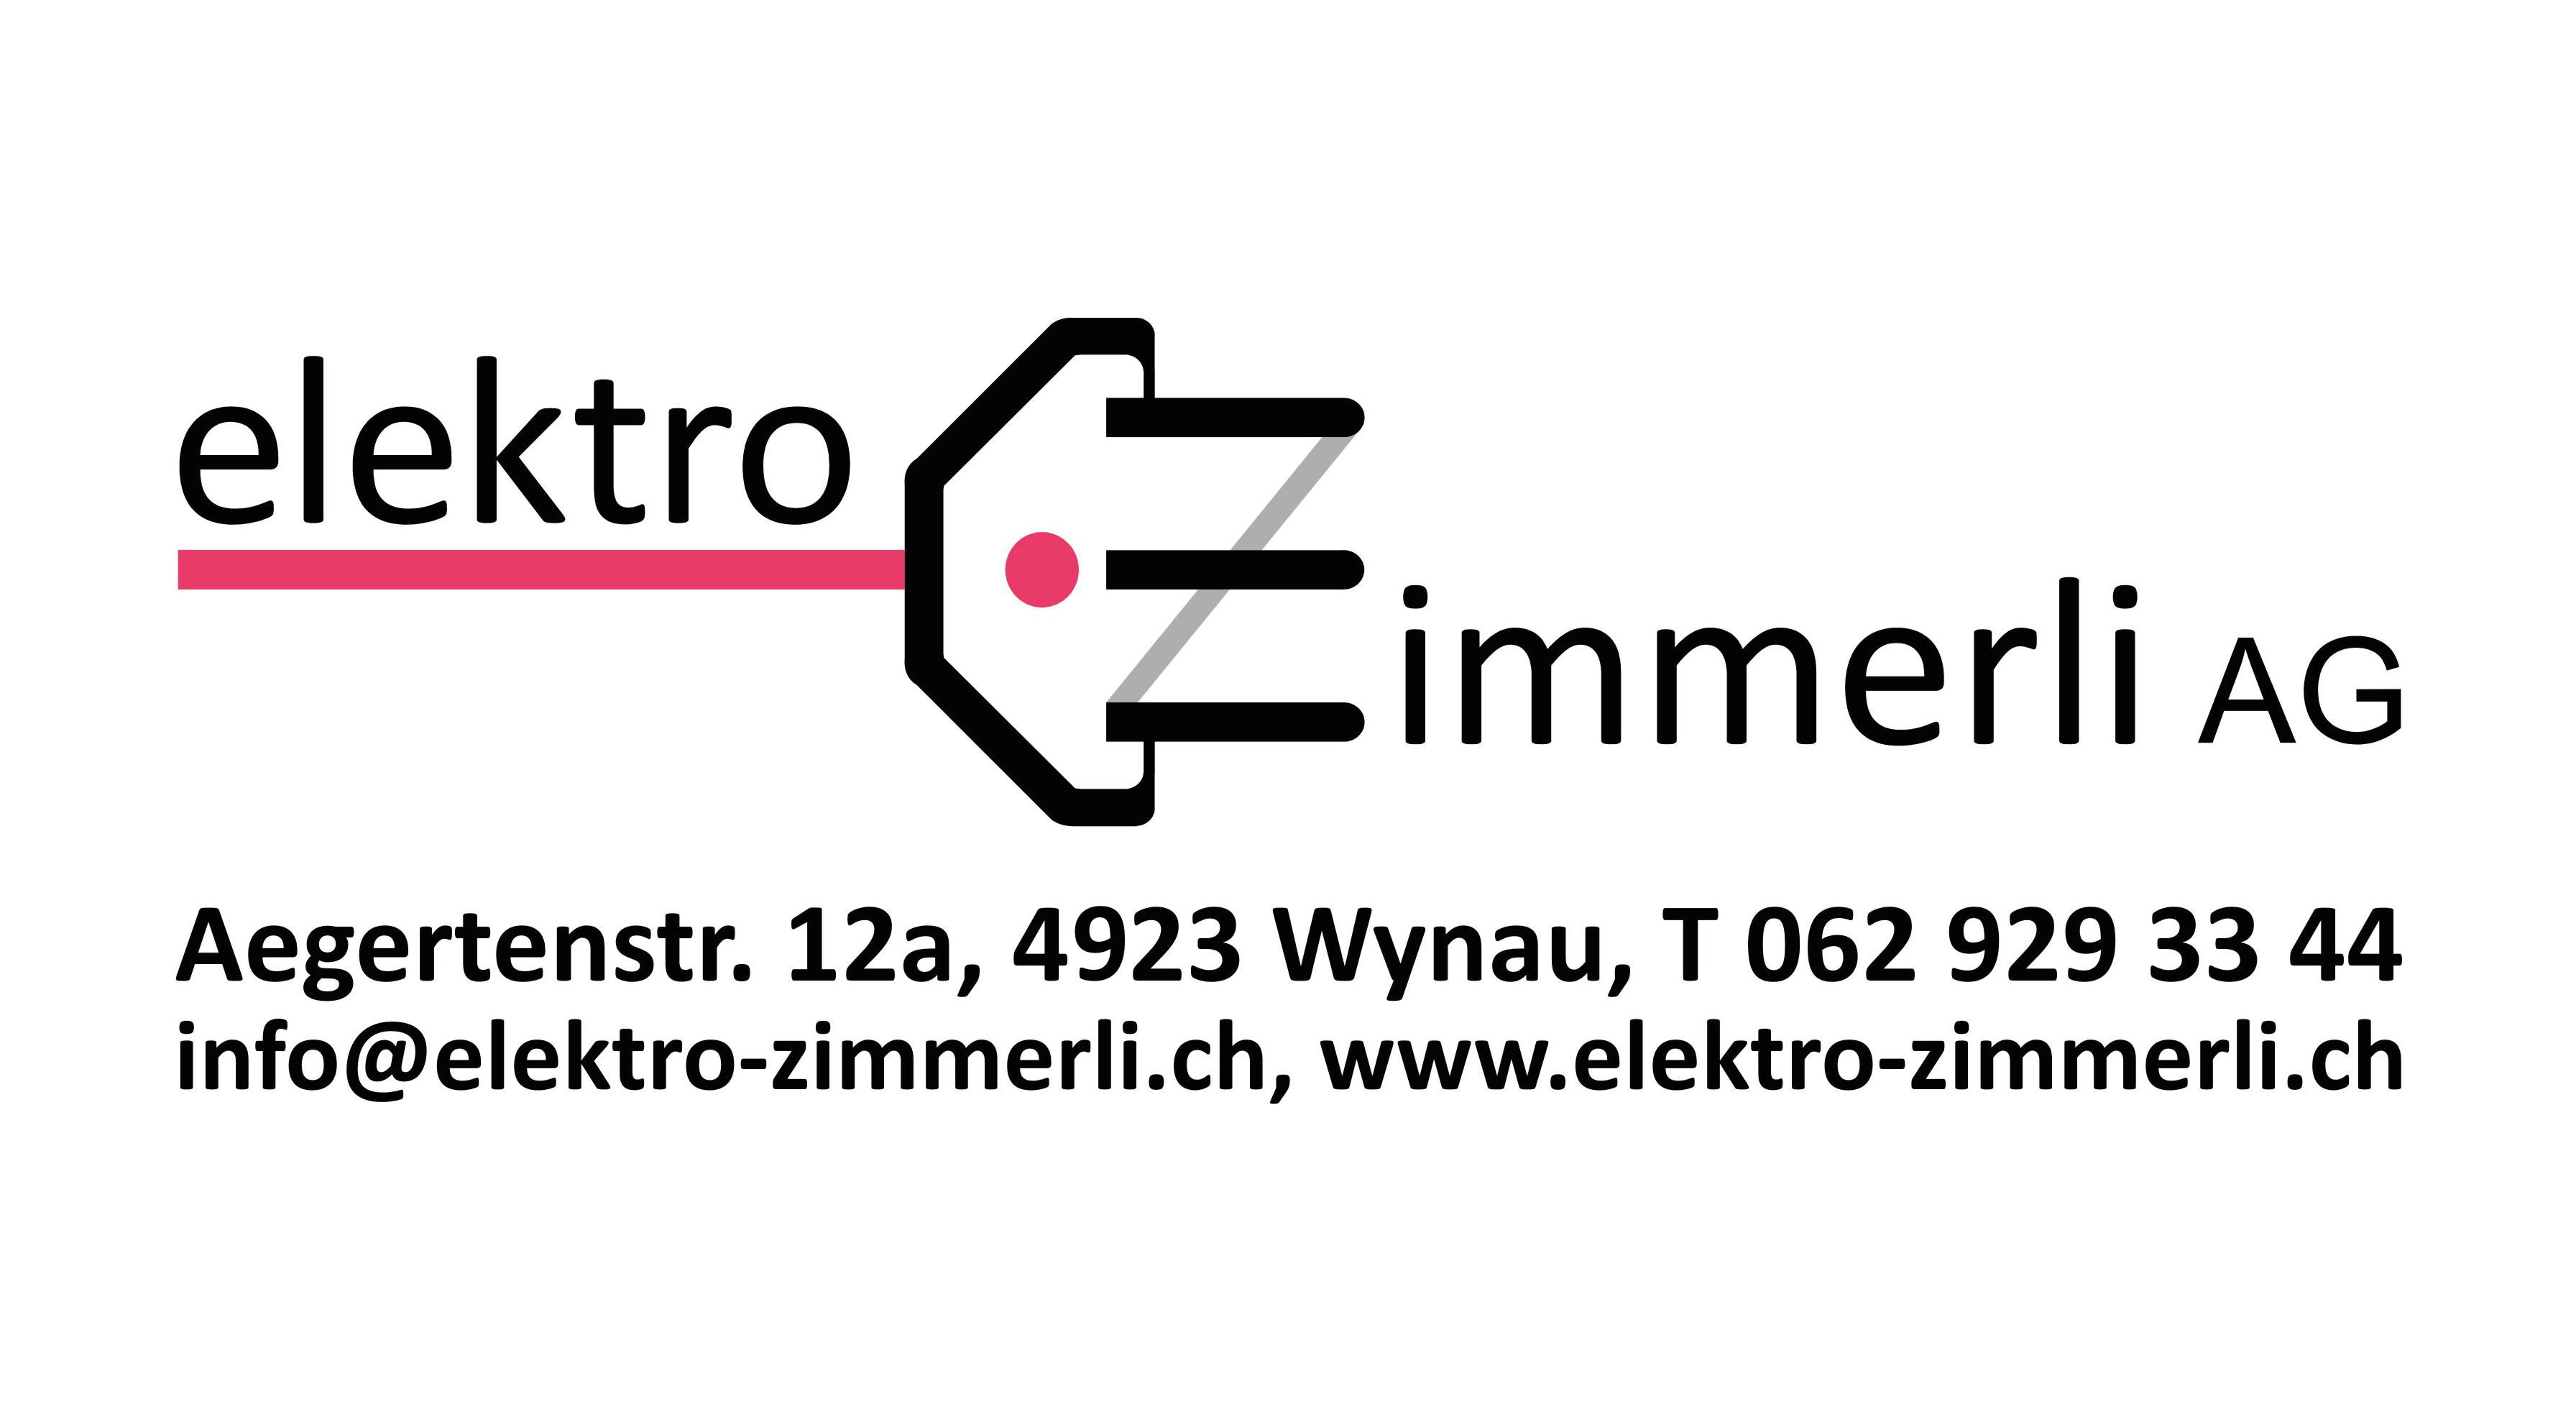 Elektro Zimmerli AG - LOGO